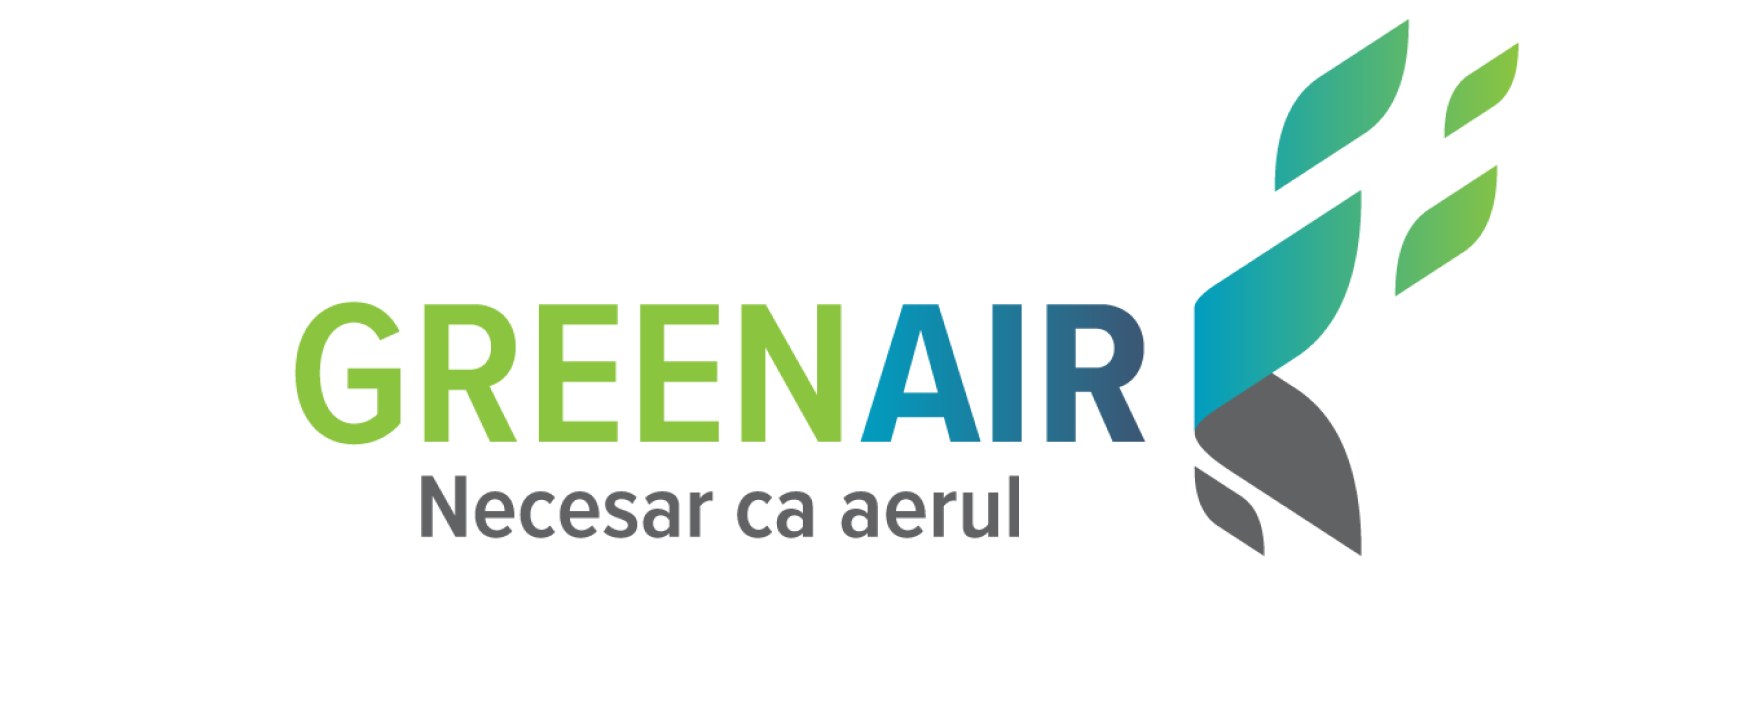 GreenAir